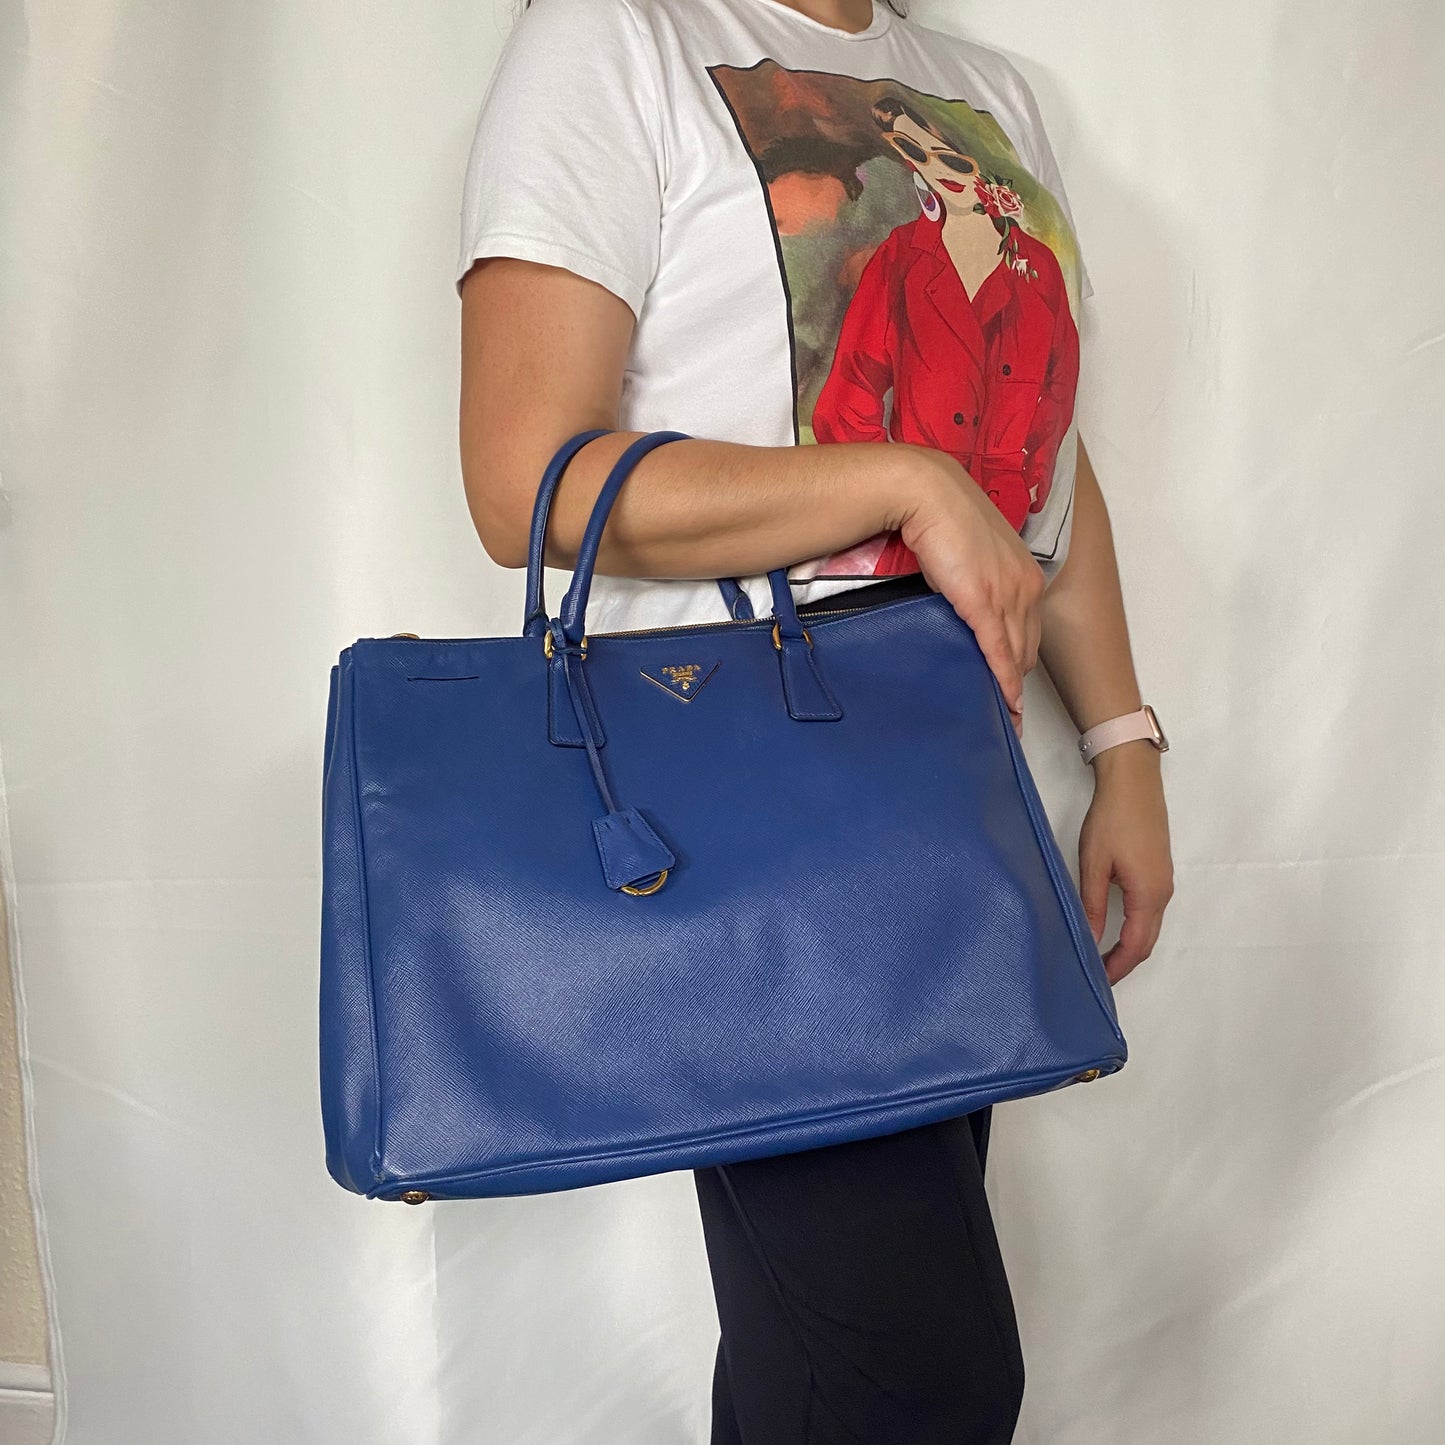 Prada Blue Saffiano Lux Large Executive Tote Bag